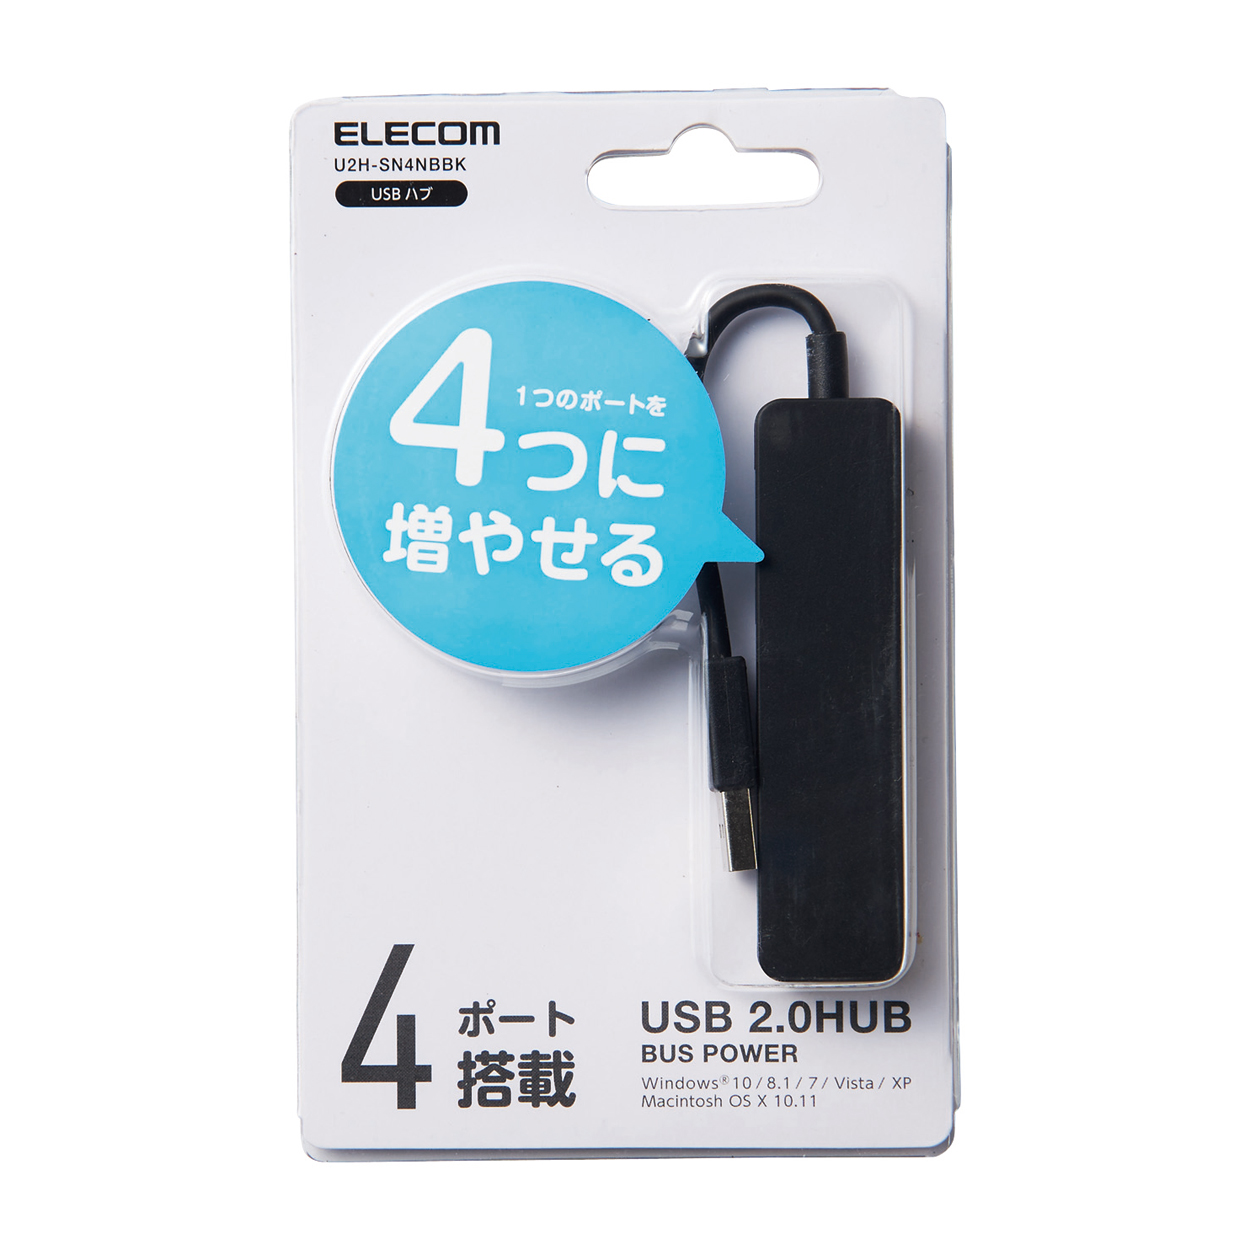 USB2.0ハブ（コンパクトタイプ） | エレコムダイレクトショップ本店はPC周辺機器メーカー「ELECOM」の直営通販サイト